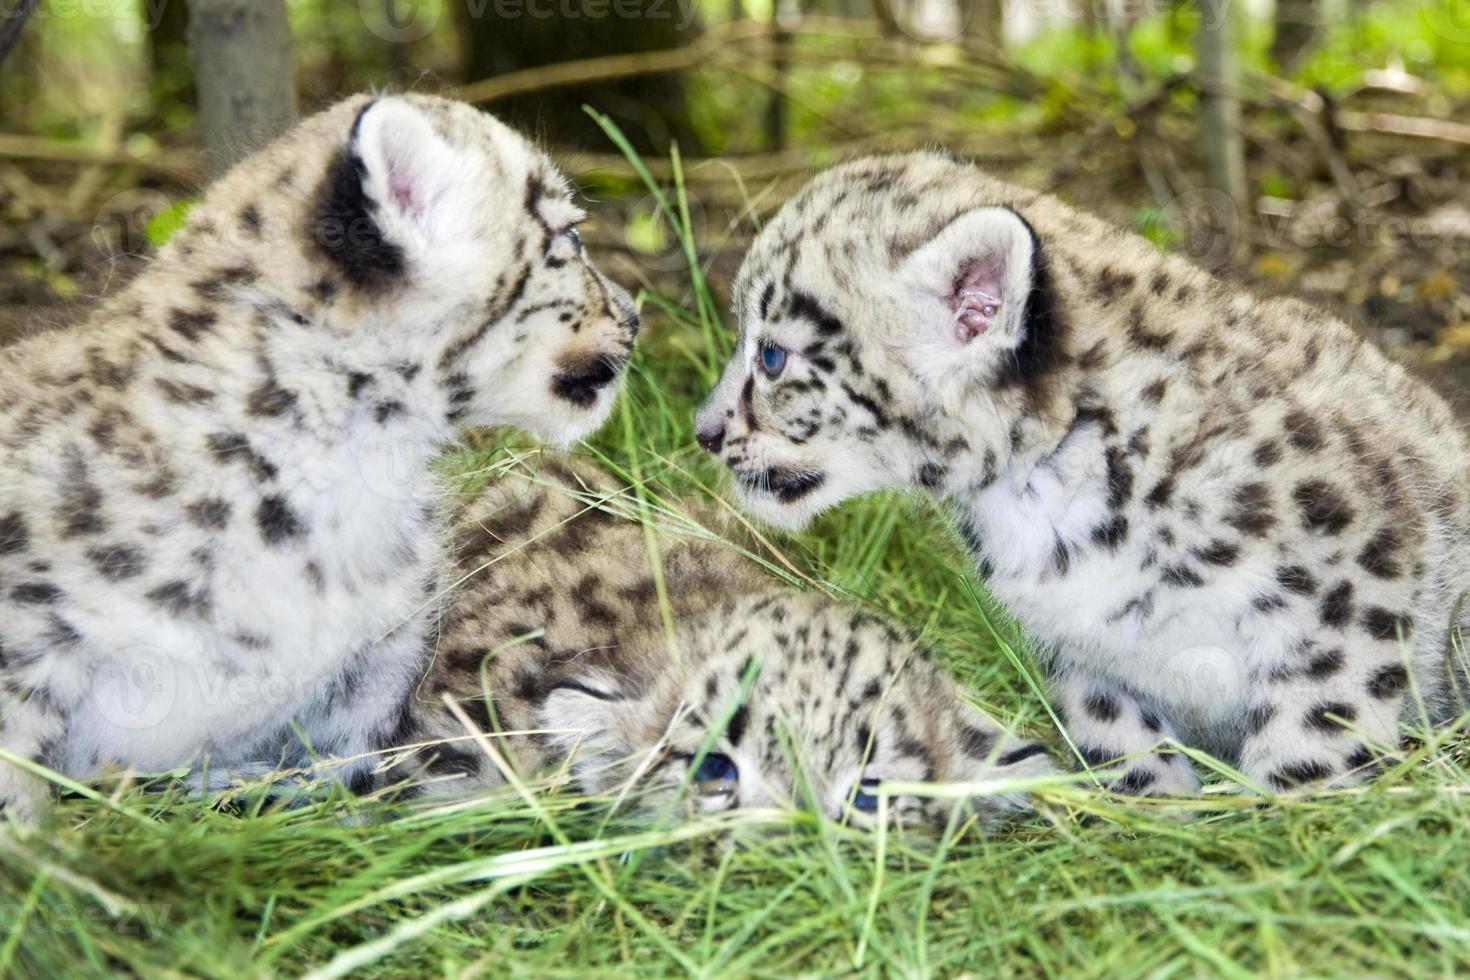 Snow leopard babies photo